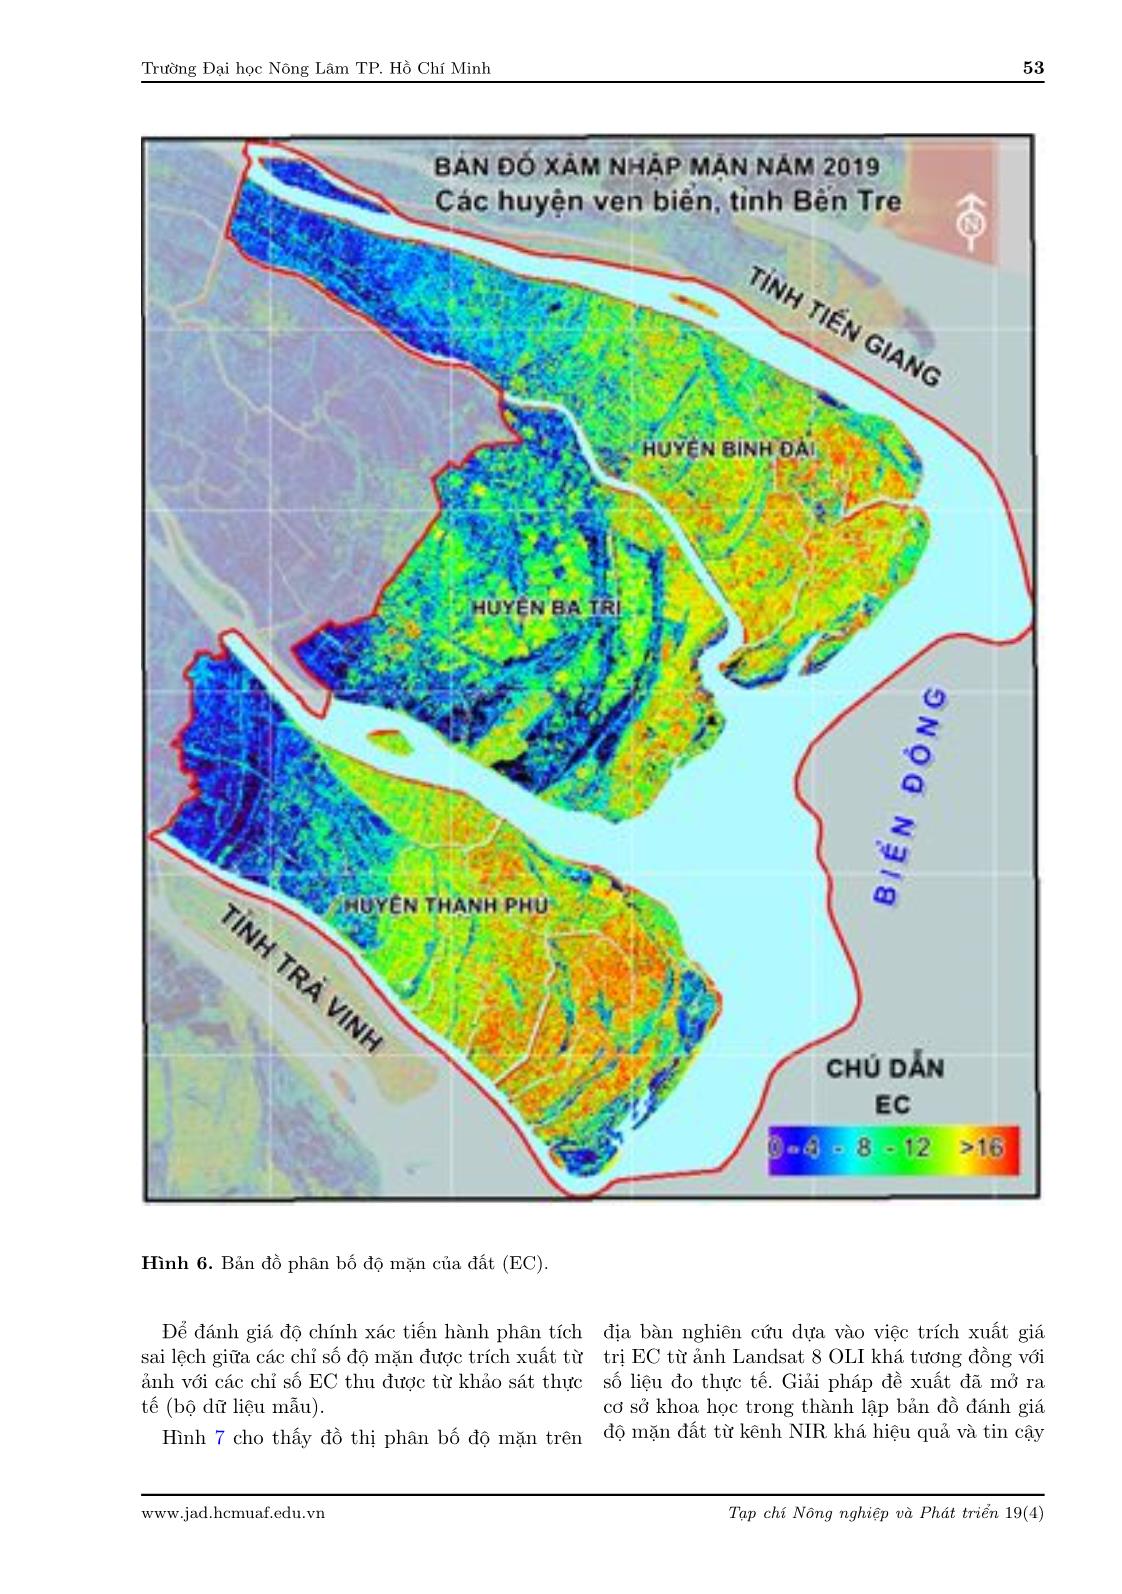 Ứng dụng ảnh Landsat 8 đánh giá xâm nhập mặn các huyện ven biển thuộc tỉnh Bến Tre trang 9